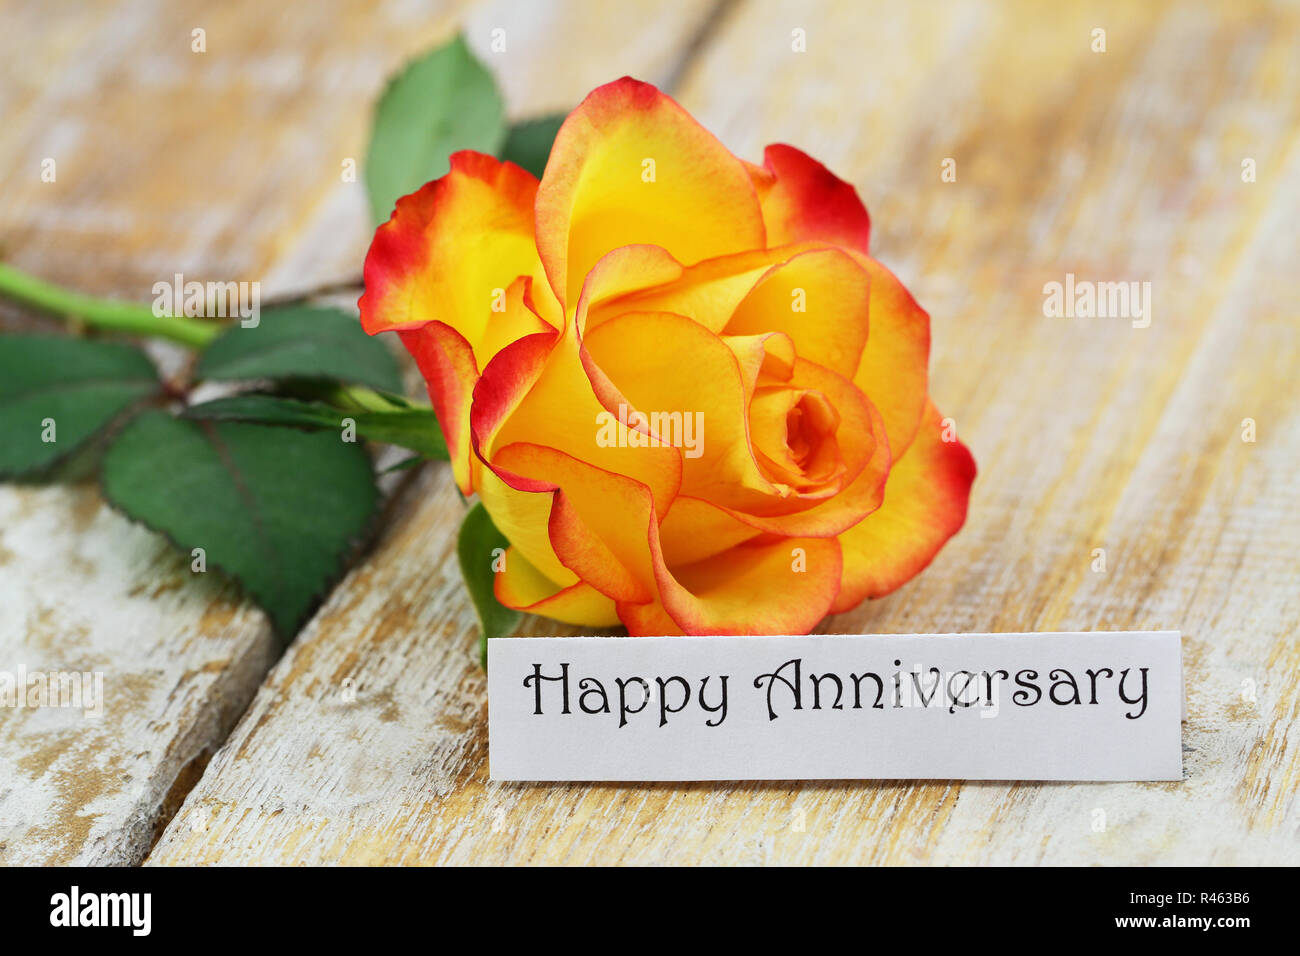 Feliz Aniversario tarjeta con hermosas rosas rojas y amarillas en la superficie rústica Foto de stock